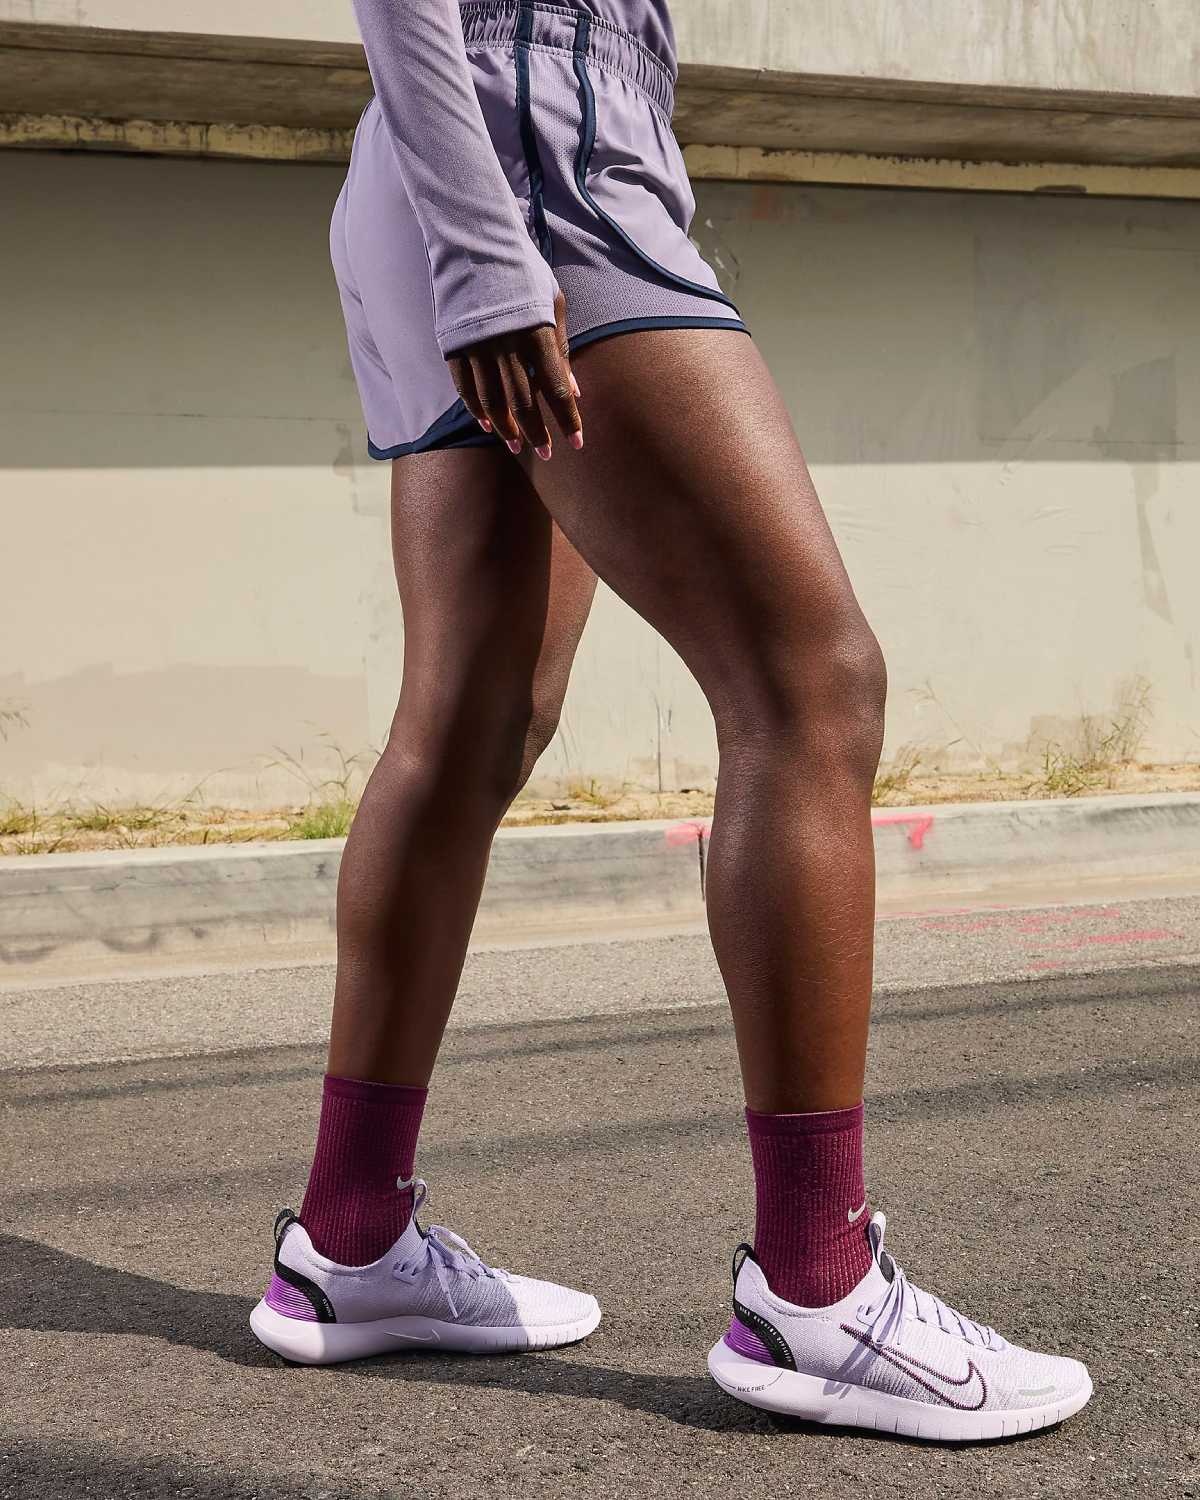 Diese 6 Nike sind perfekt zum Laufen und kombinieren Komfort und Stil